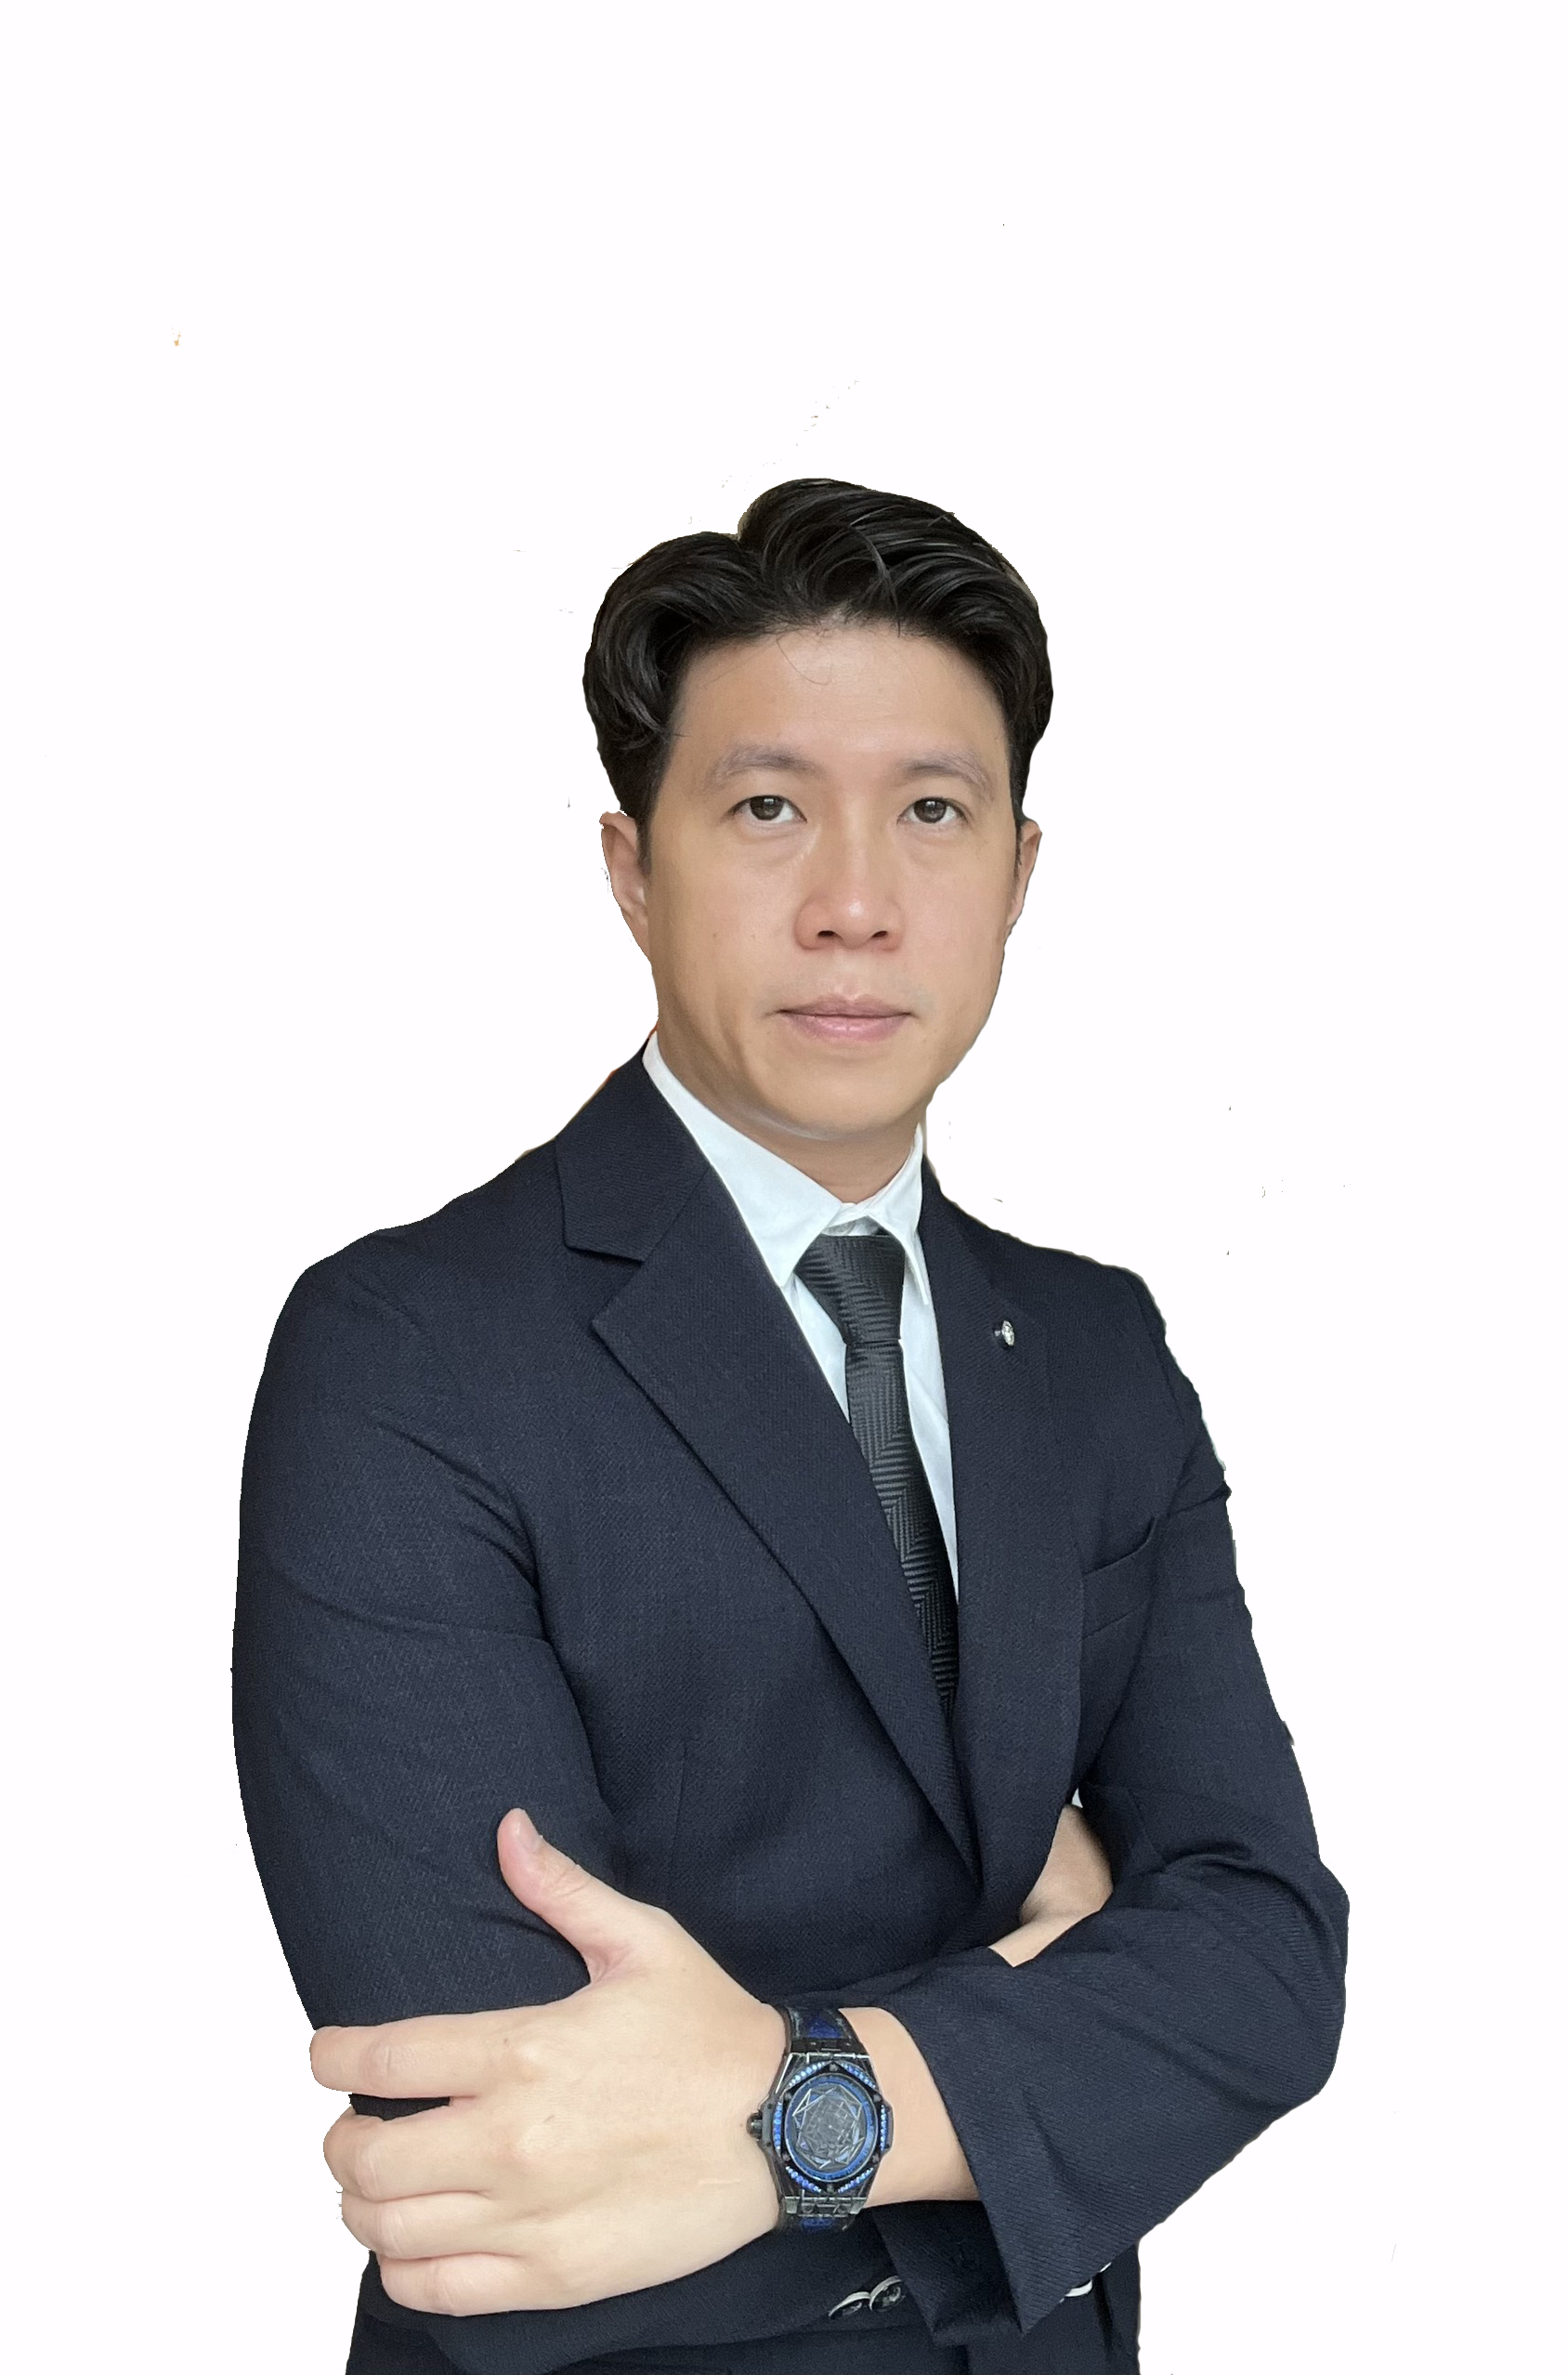 Mr. Ha Ngoc Minh